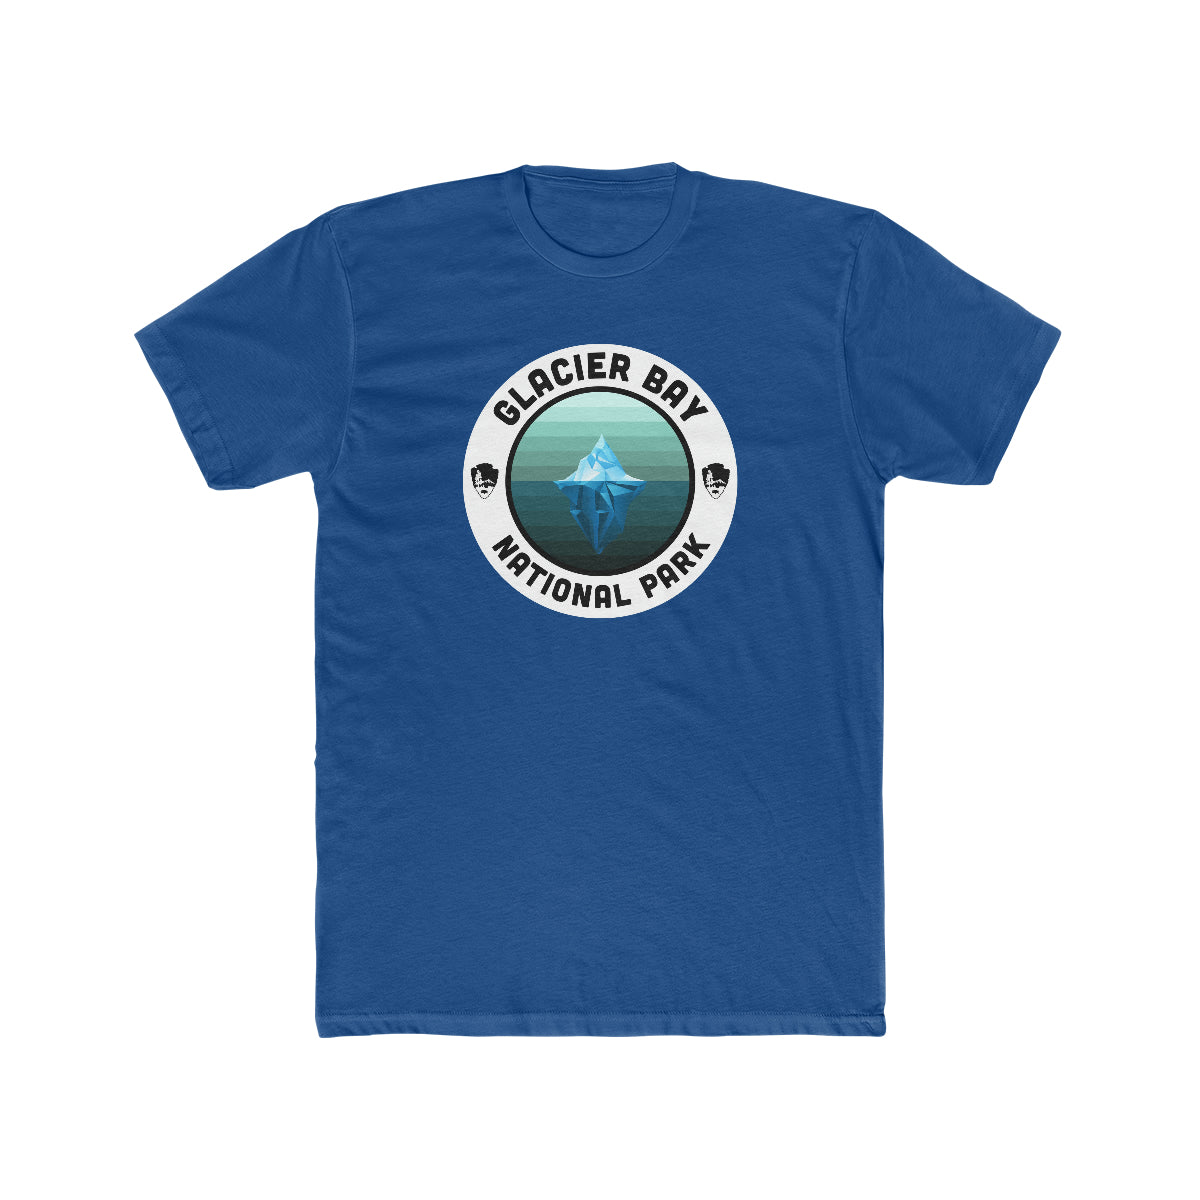 Glacier Bay National Park T-Shirt - Round Badge Design